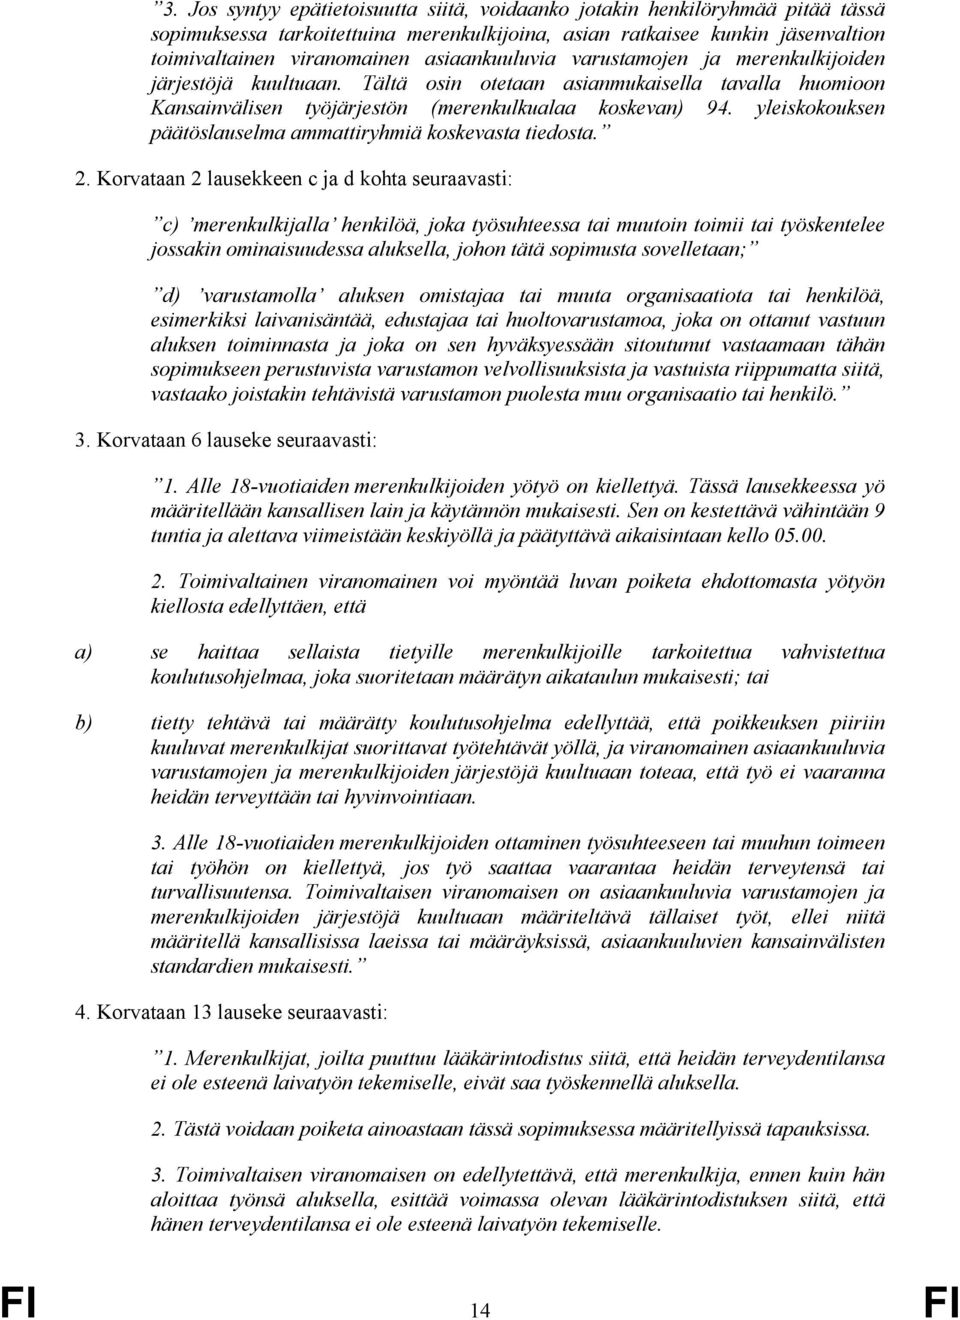 yleiskokouksen päätöslauselma ammattiryhmiä koskevasta tiedosta. 2.